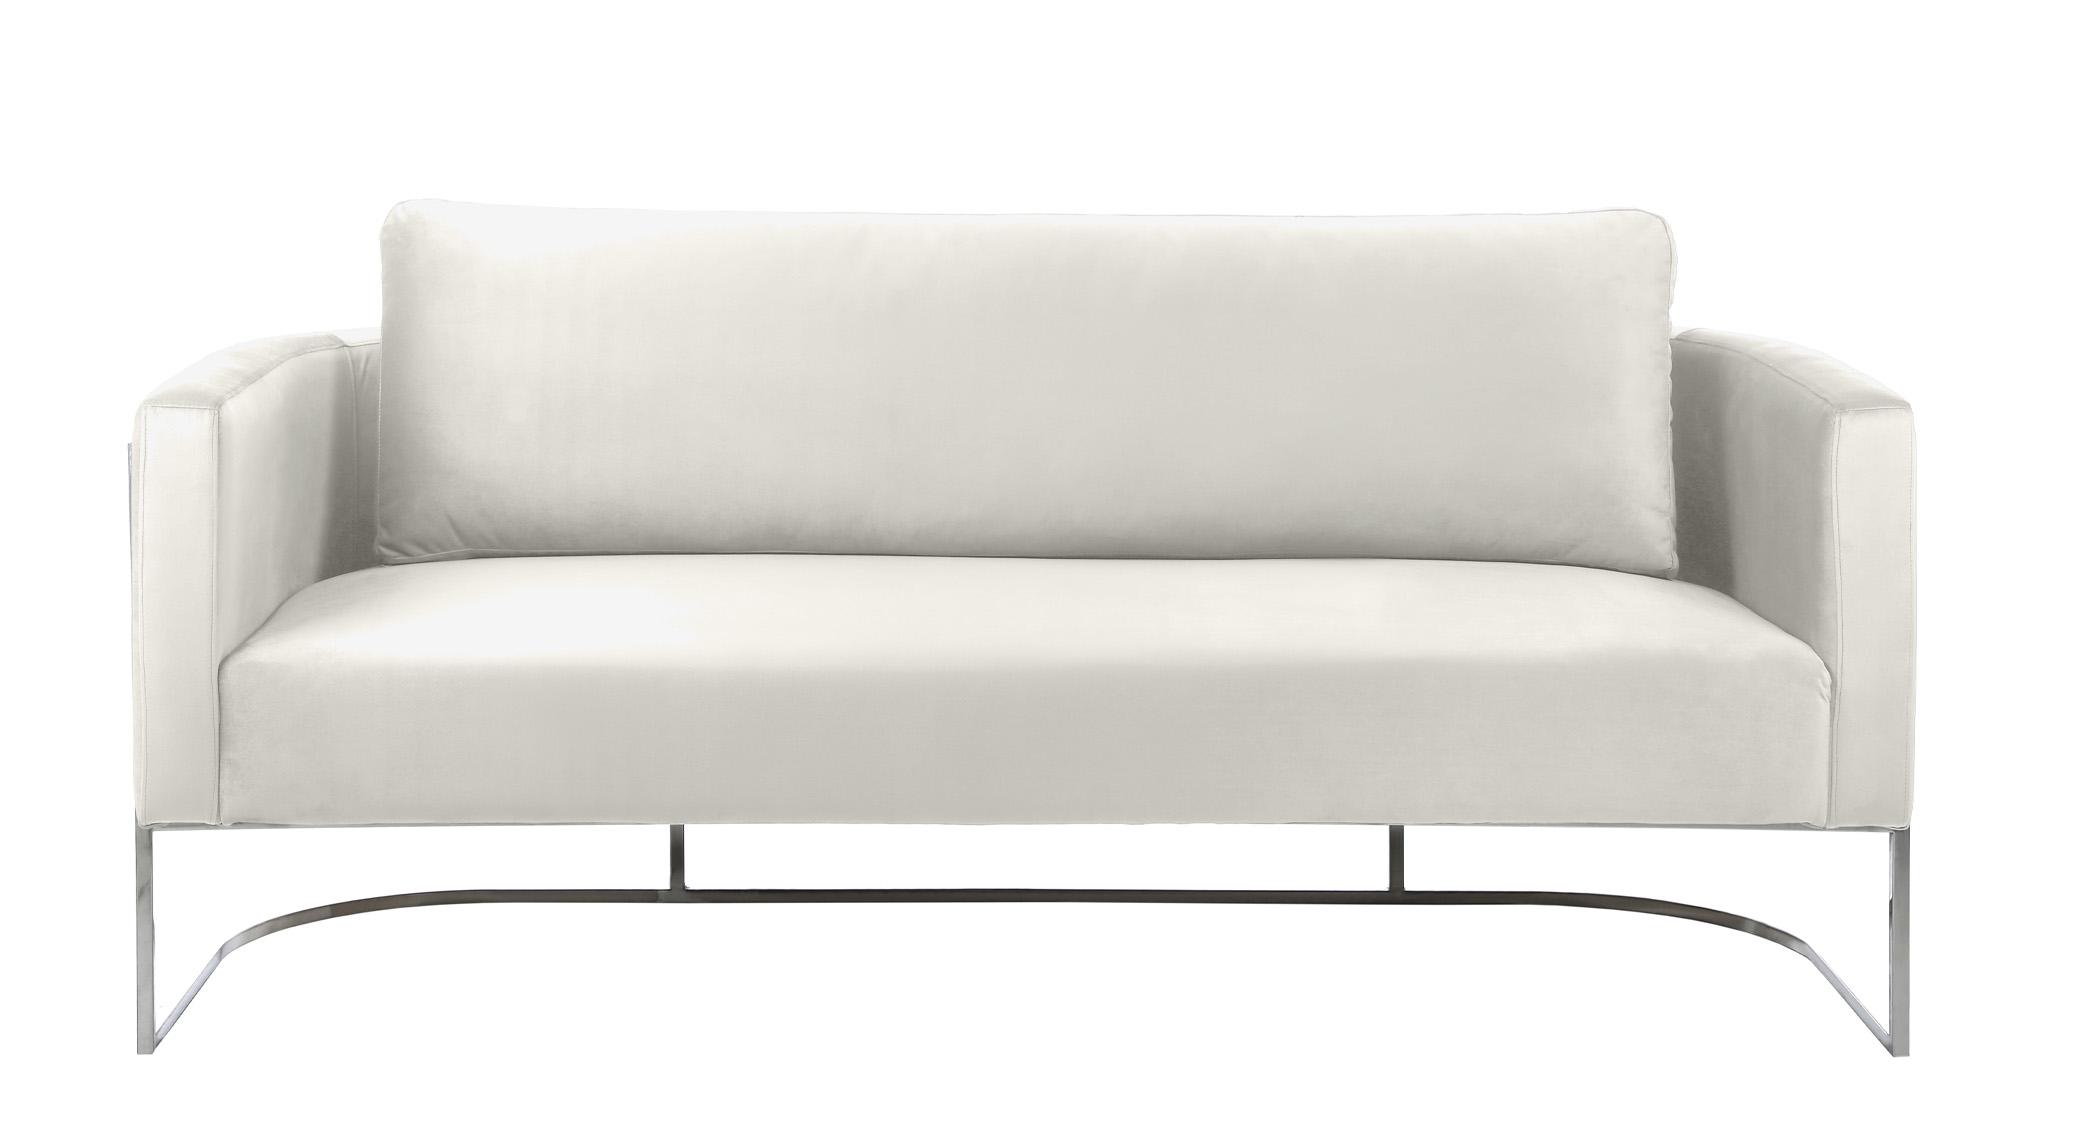 

    
Meridian Furniture CASA 691Cream-S Sofa Chrome/Cream 691Cream-S
